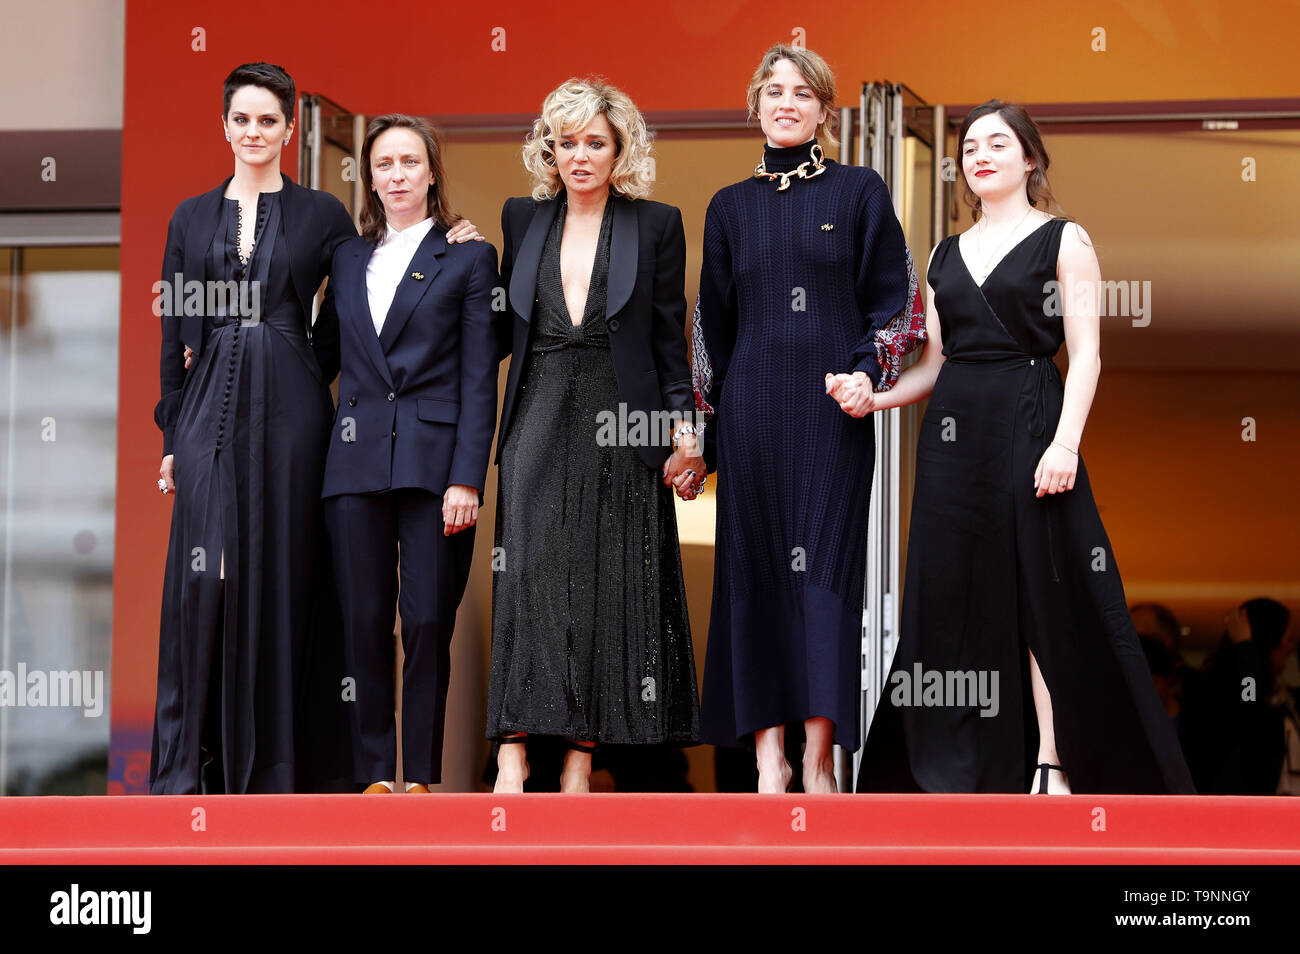 Cannes 2021: Noémie Merlant on Céline Sciamma, Nicolas Ghesquière – WWD